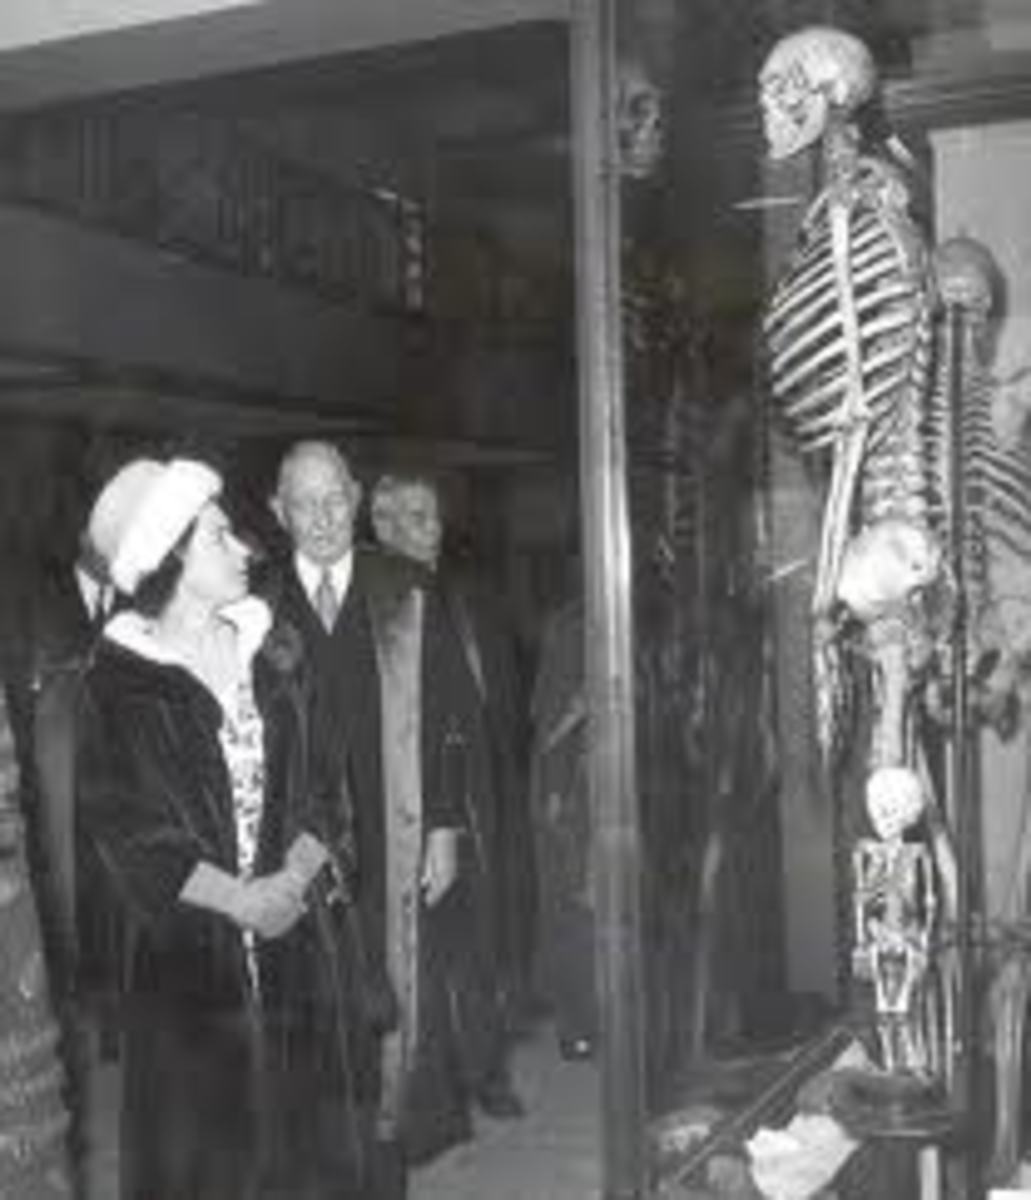 Giant bones on display.